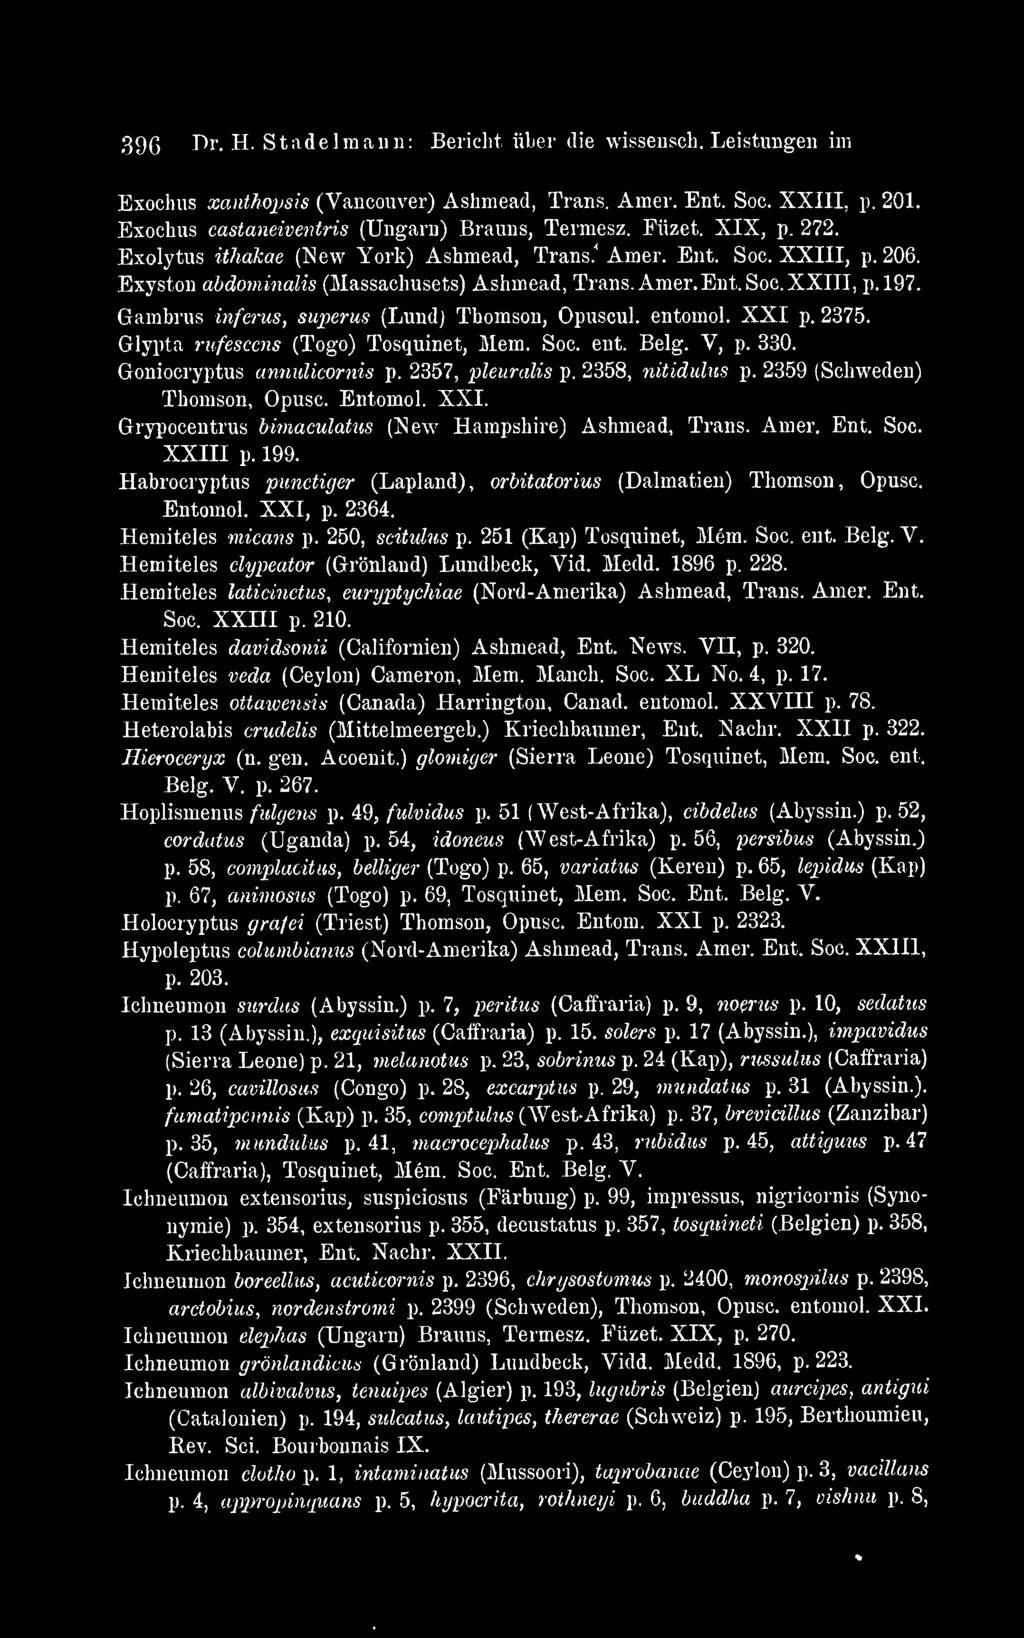 Gambrus inferus, superus (Lund) Thomson, Opuscul. entomol. XXI p. 2375. Glypta rnfescens (Togo) Tosquinet, Mem. Soc. ent. Belg. V, p. 330. Goniocryptus annulicornis p. 2357, pleuralis p.